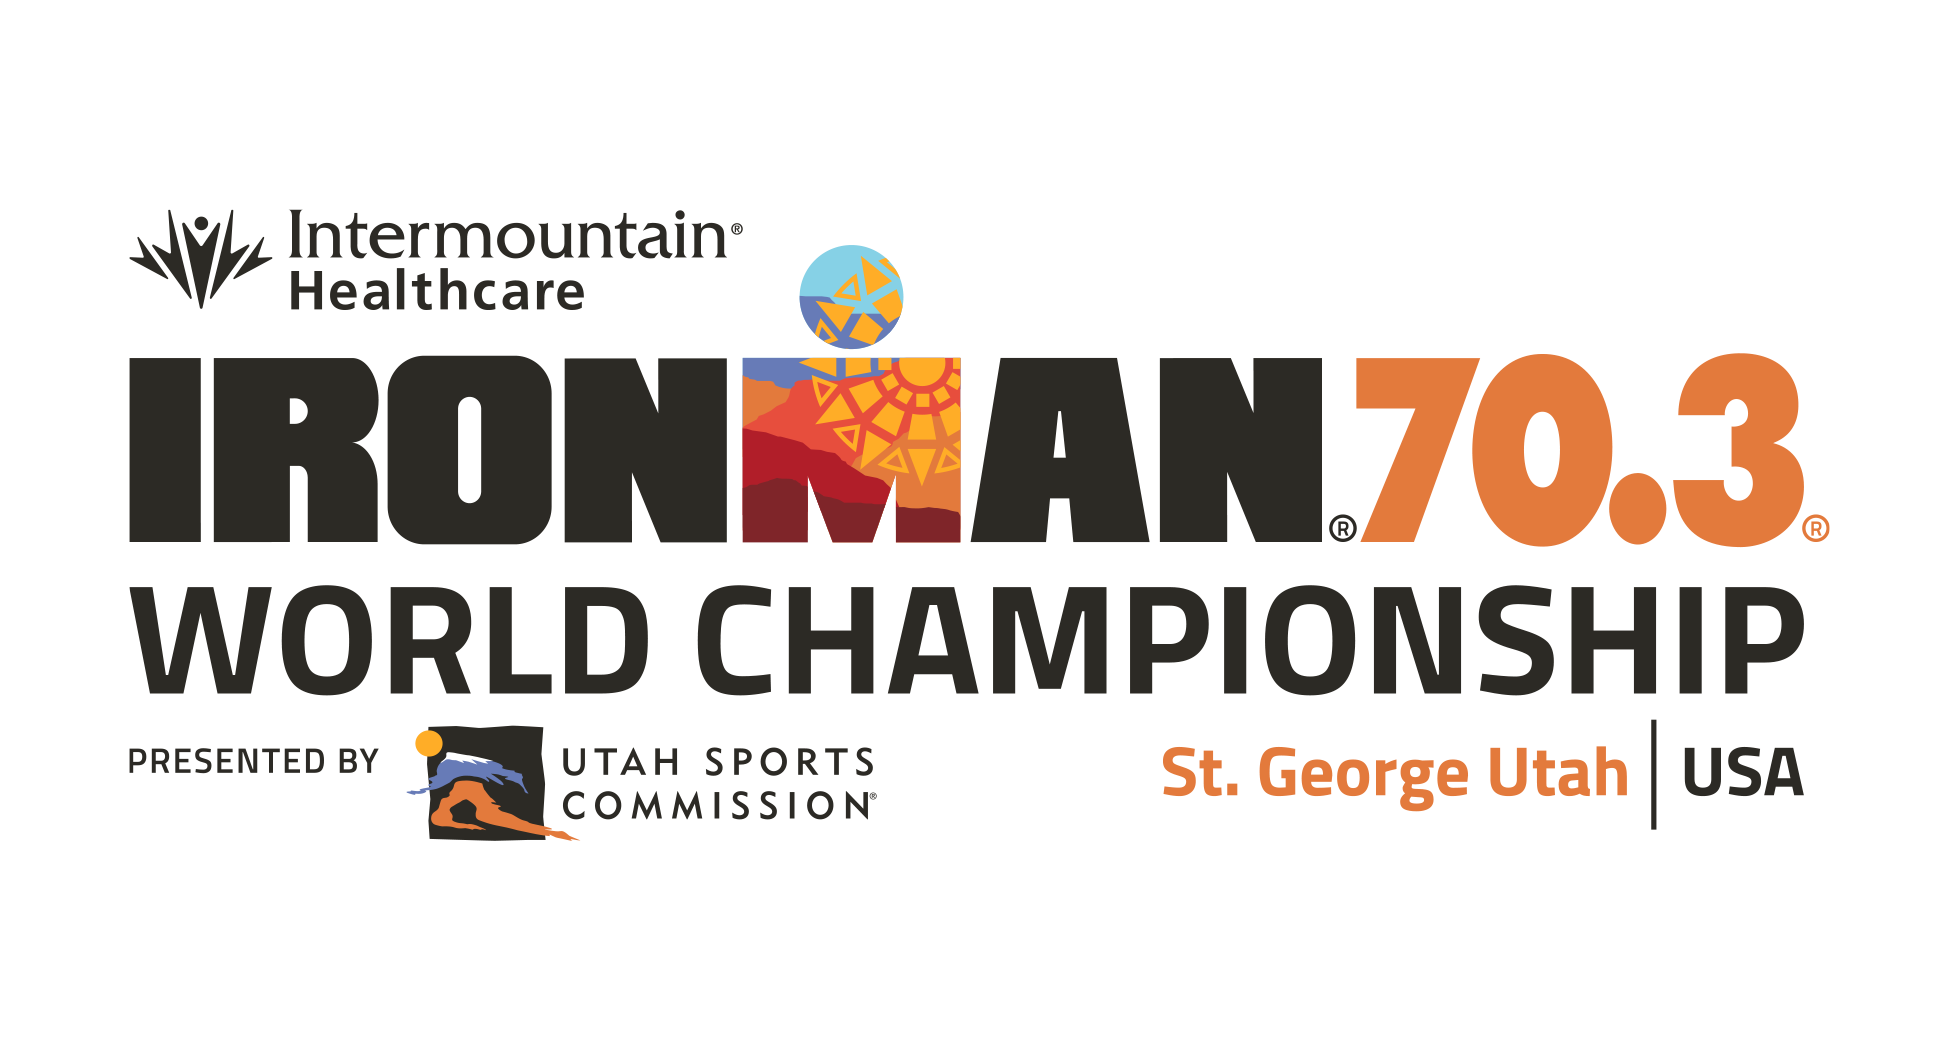 Ironman World Championship